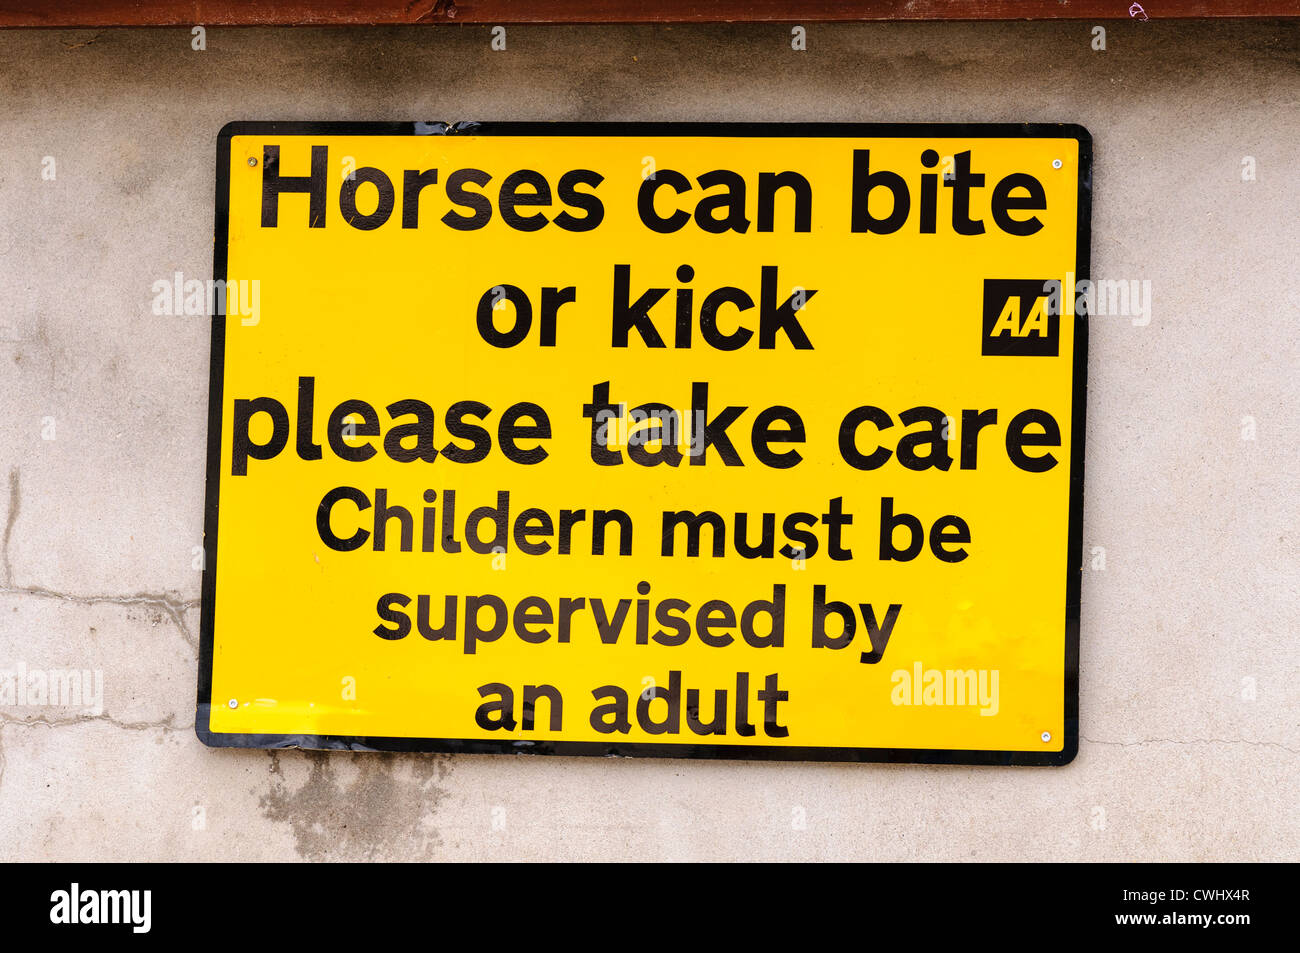 AA strada segno attenzione che i cavalli possono cacciare e mordere e consigliare i bambini devono essere accompagnati (mis-spelta come "bambini") Foto Stock